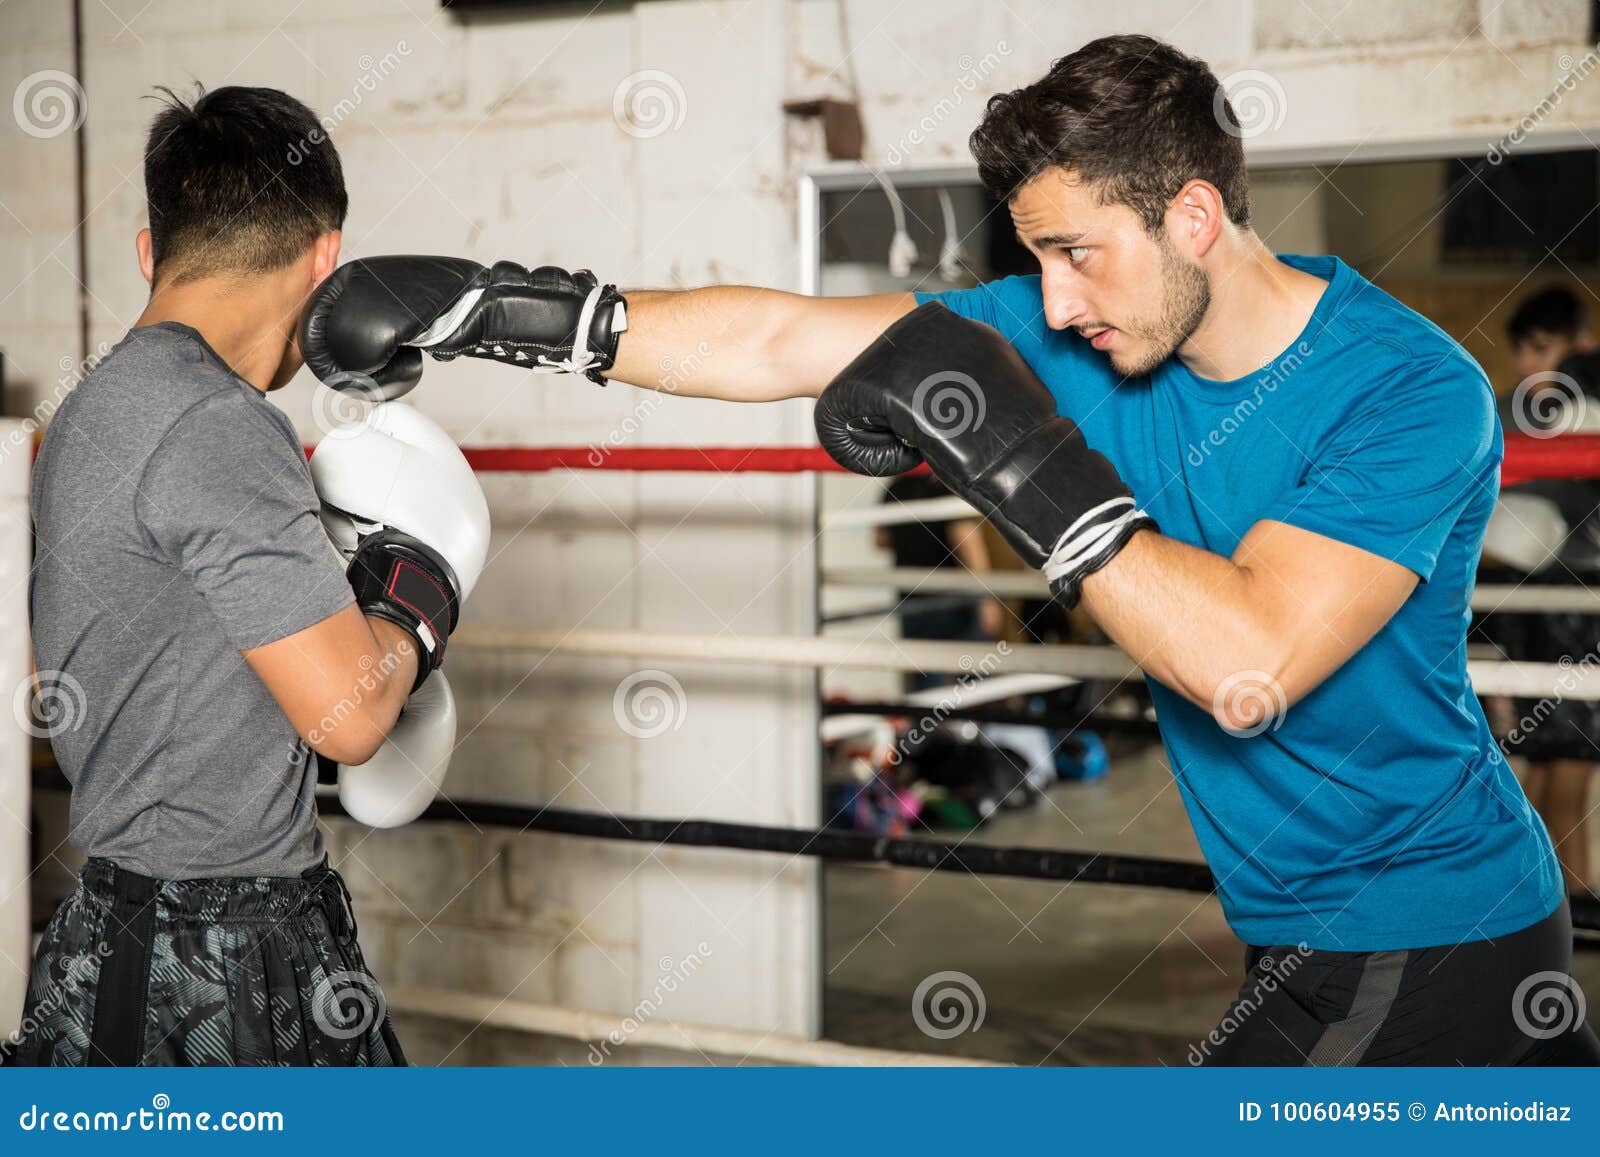 Бокс в парах. Бокс работа в парах. Тренировка бокс пара приема. Fight each